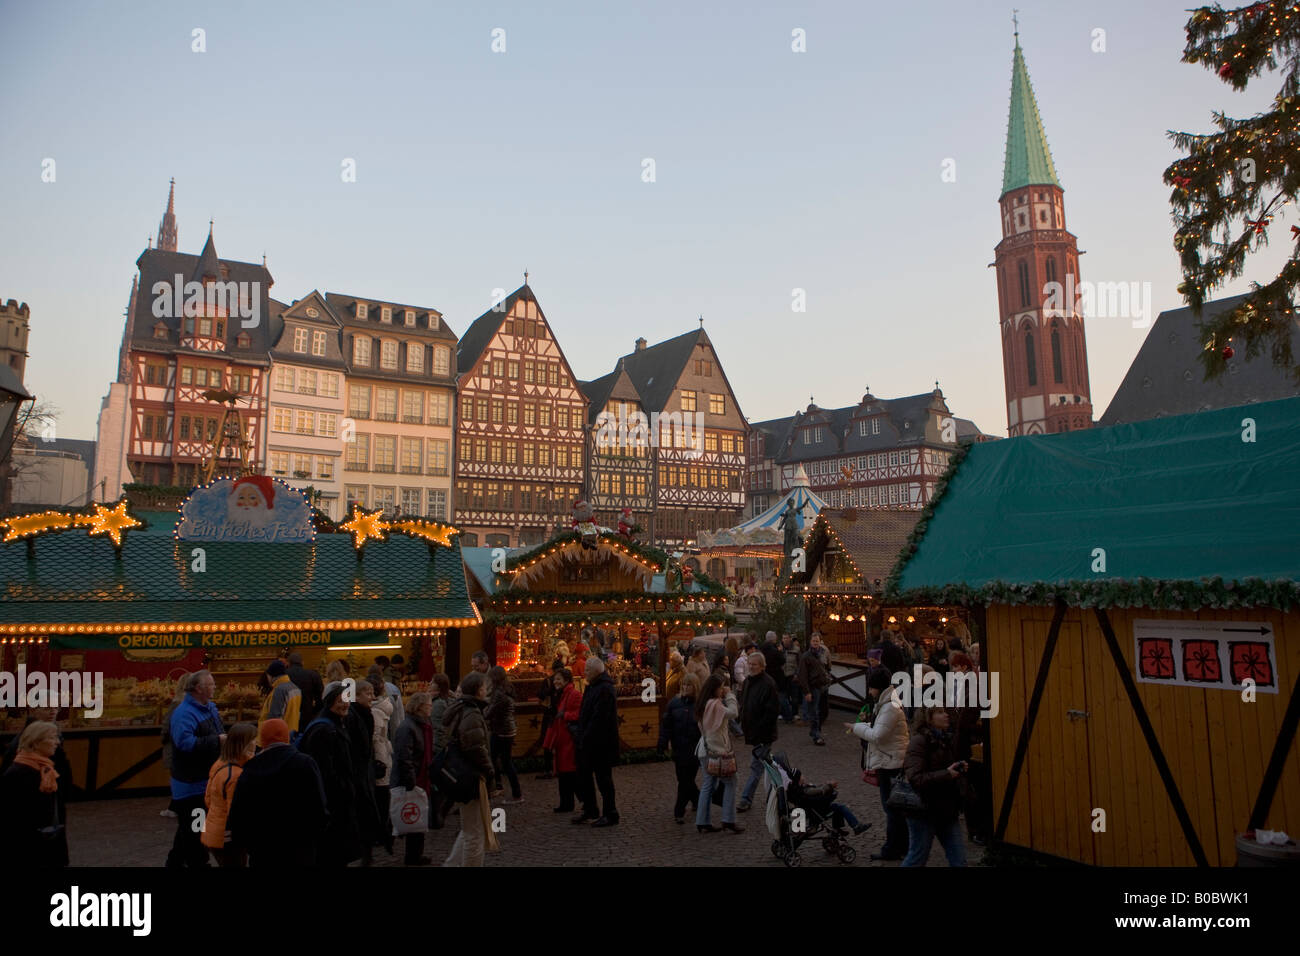 Marchés de Noël dans l'Romerplatz avec la Nikolaikirche, St Nicolas, église, s'élevant au-dessus, Francfort, Hesse, Allemagne. Banque D'Images